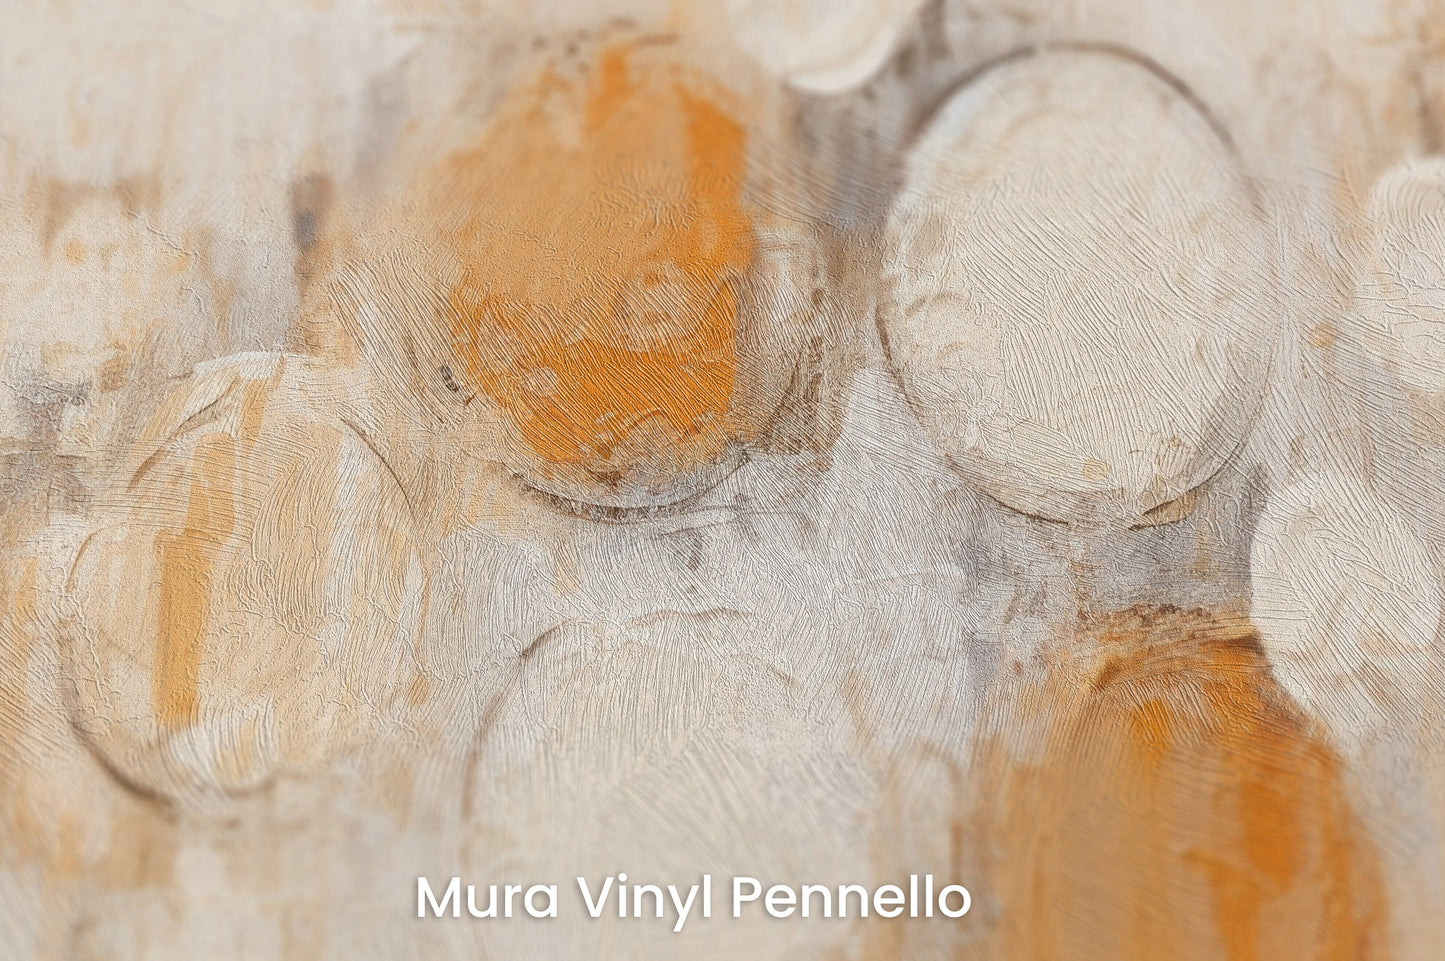 Zbliżenie na artystyczną fototapetę o nazwie AMBER AND IVORY SPHERICAL HARMONY na podłożu Mura Vinyl Pennello - faktura pociągnięć pędzla malarskiego.